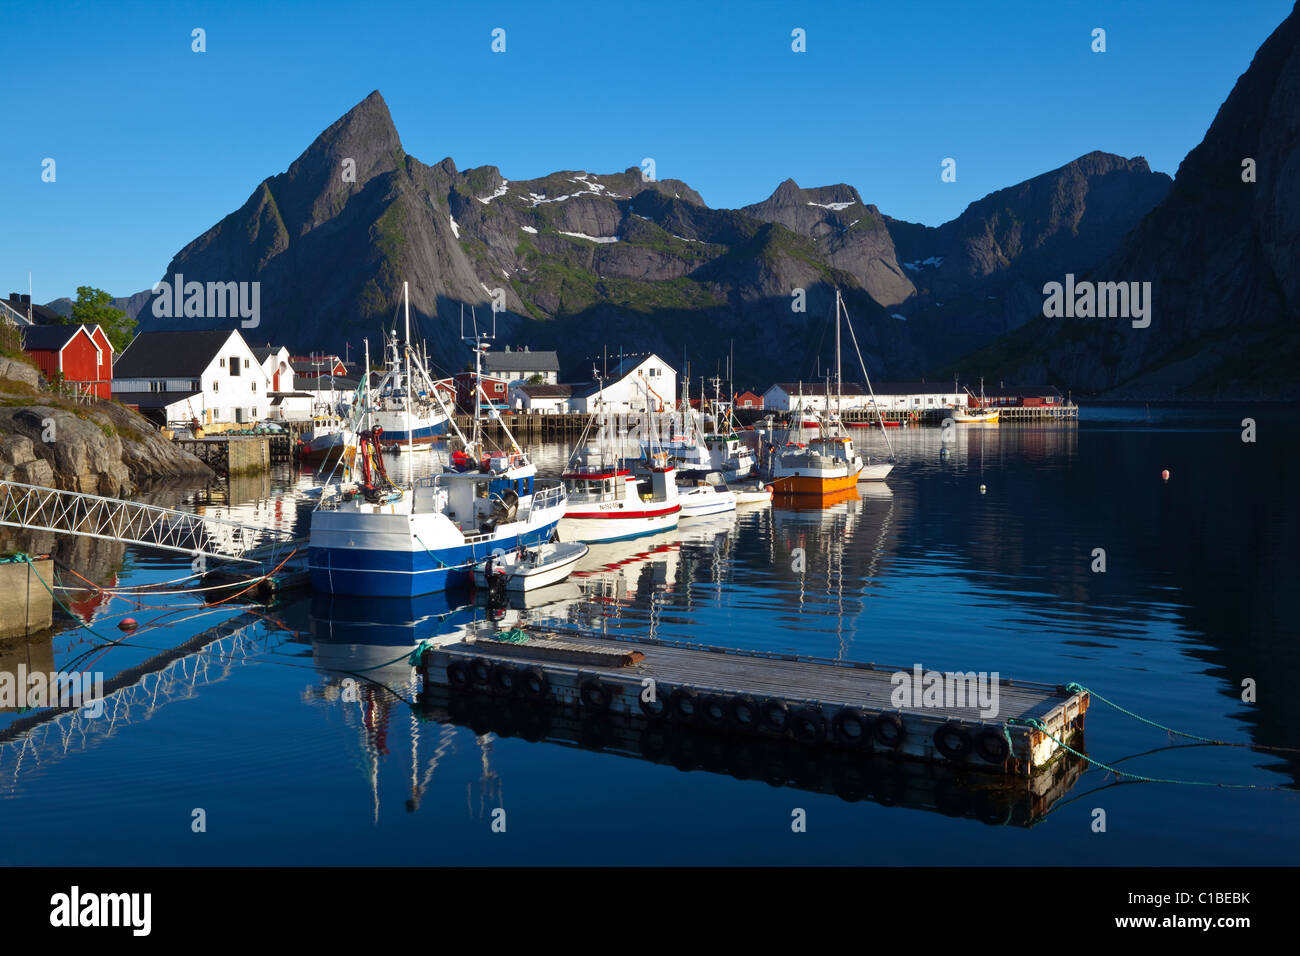 Il pittoresco villaggio di pescatori di Hamnoy, Moskenesoy, Isole Lofoten, Nordland, Norvegia Foto Stock